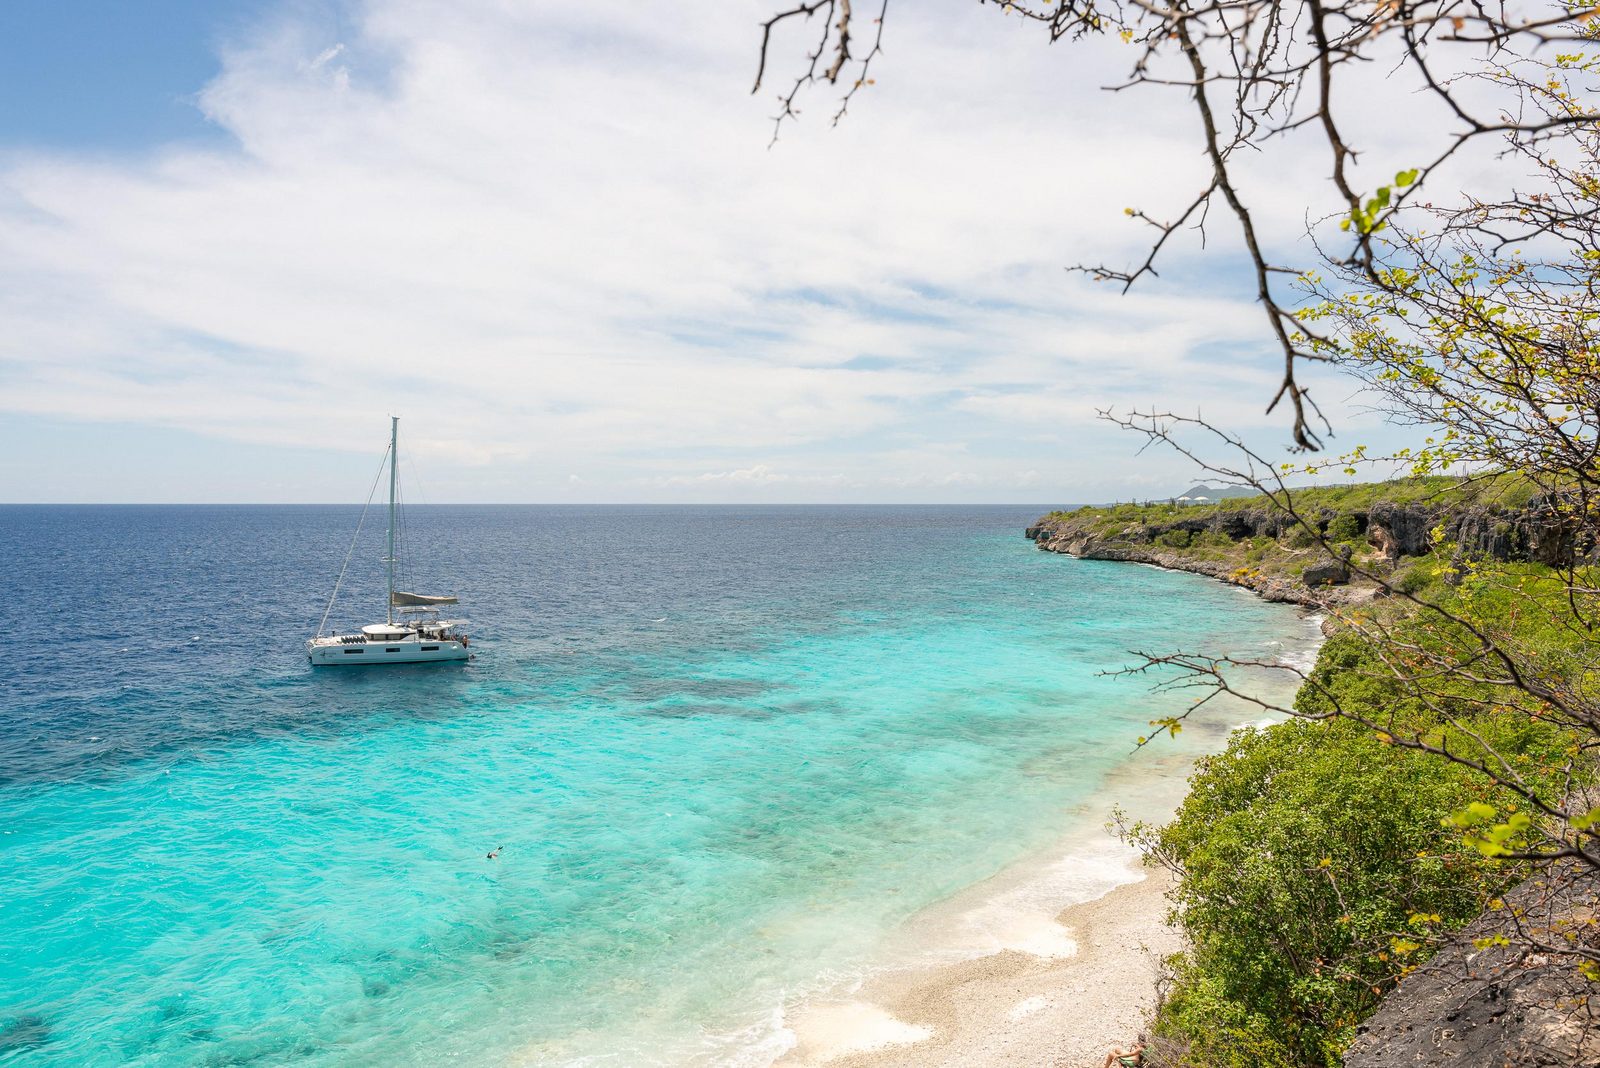 Bonaire est l'île idéale pour profiter de vos vacances, notamment avec vos enfants. Après tout, le Resort Bonaire est un complexe conçu pour accueillir les familles avec enfants. En savoir plus sur notre complexe.